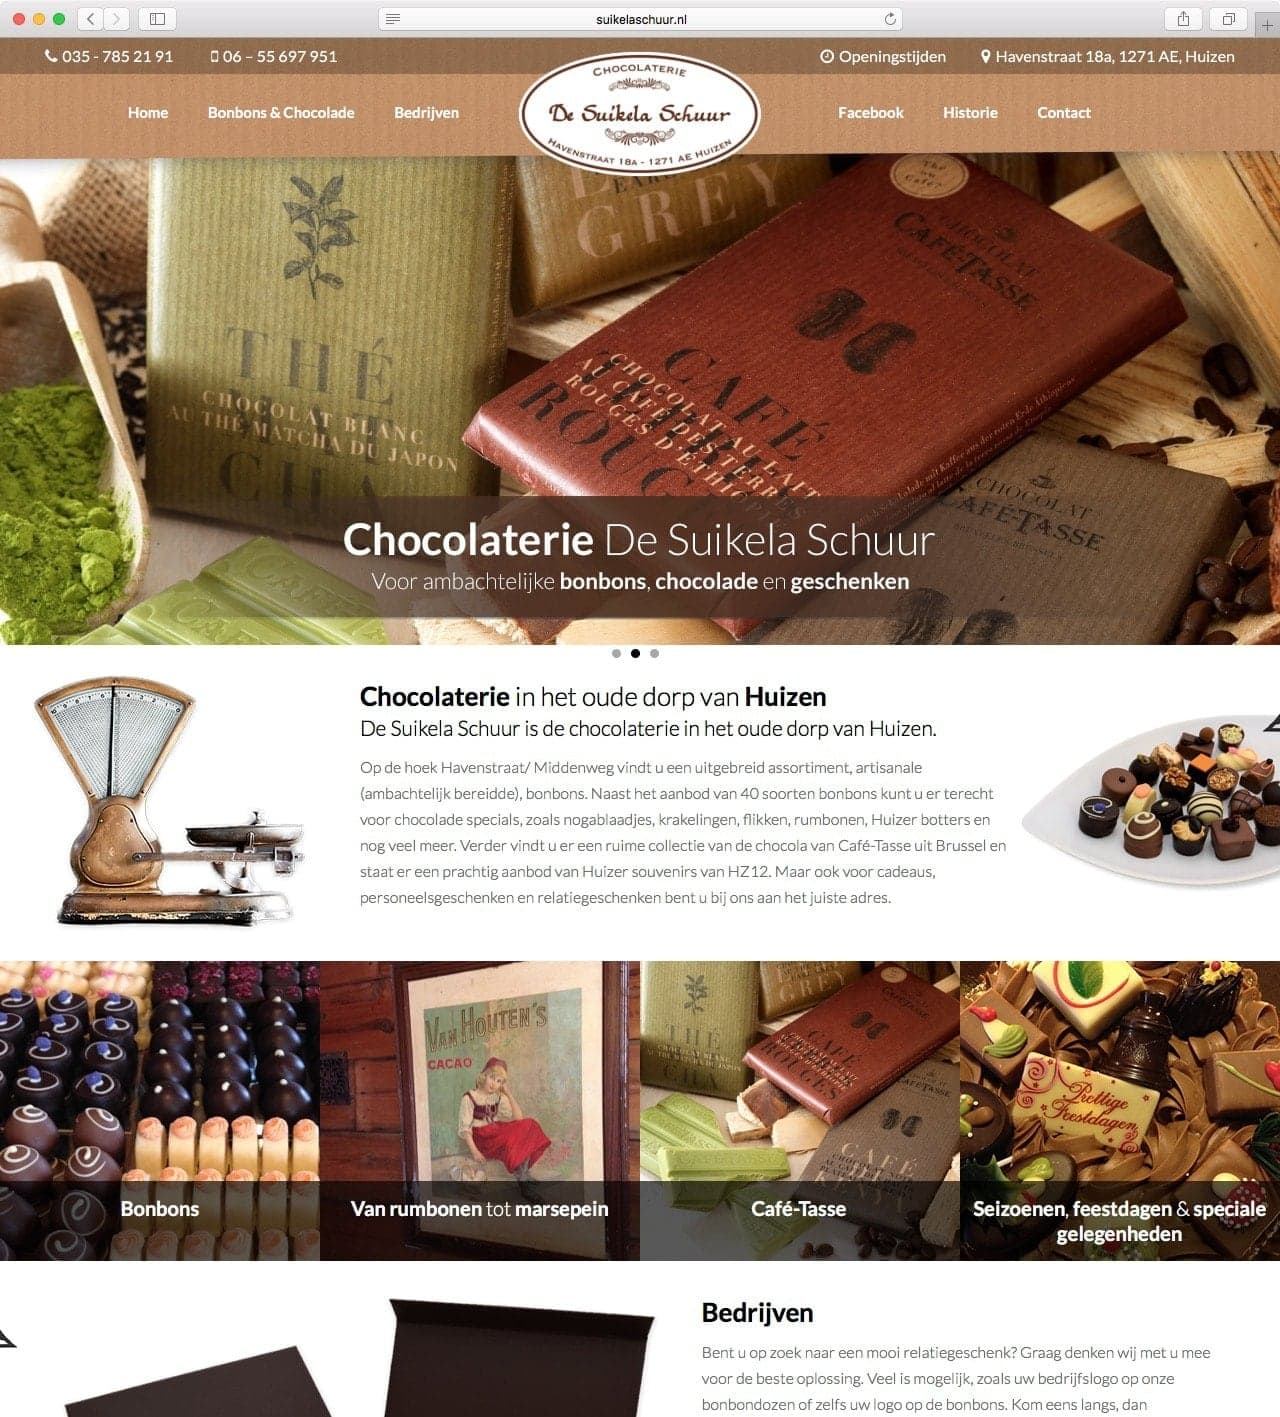 Chocolaterie de Suikela Schuur